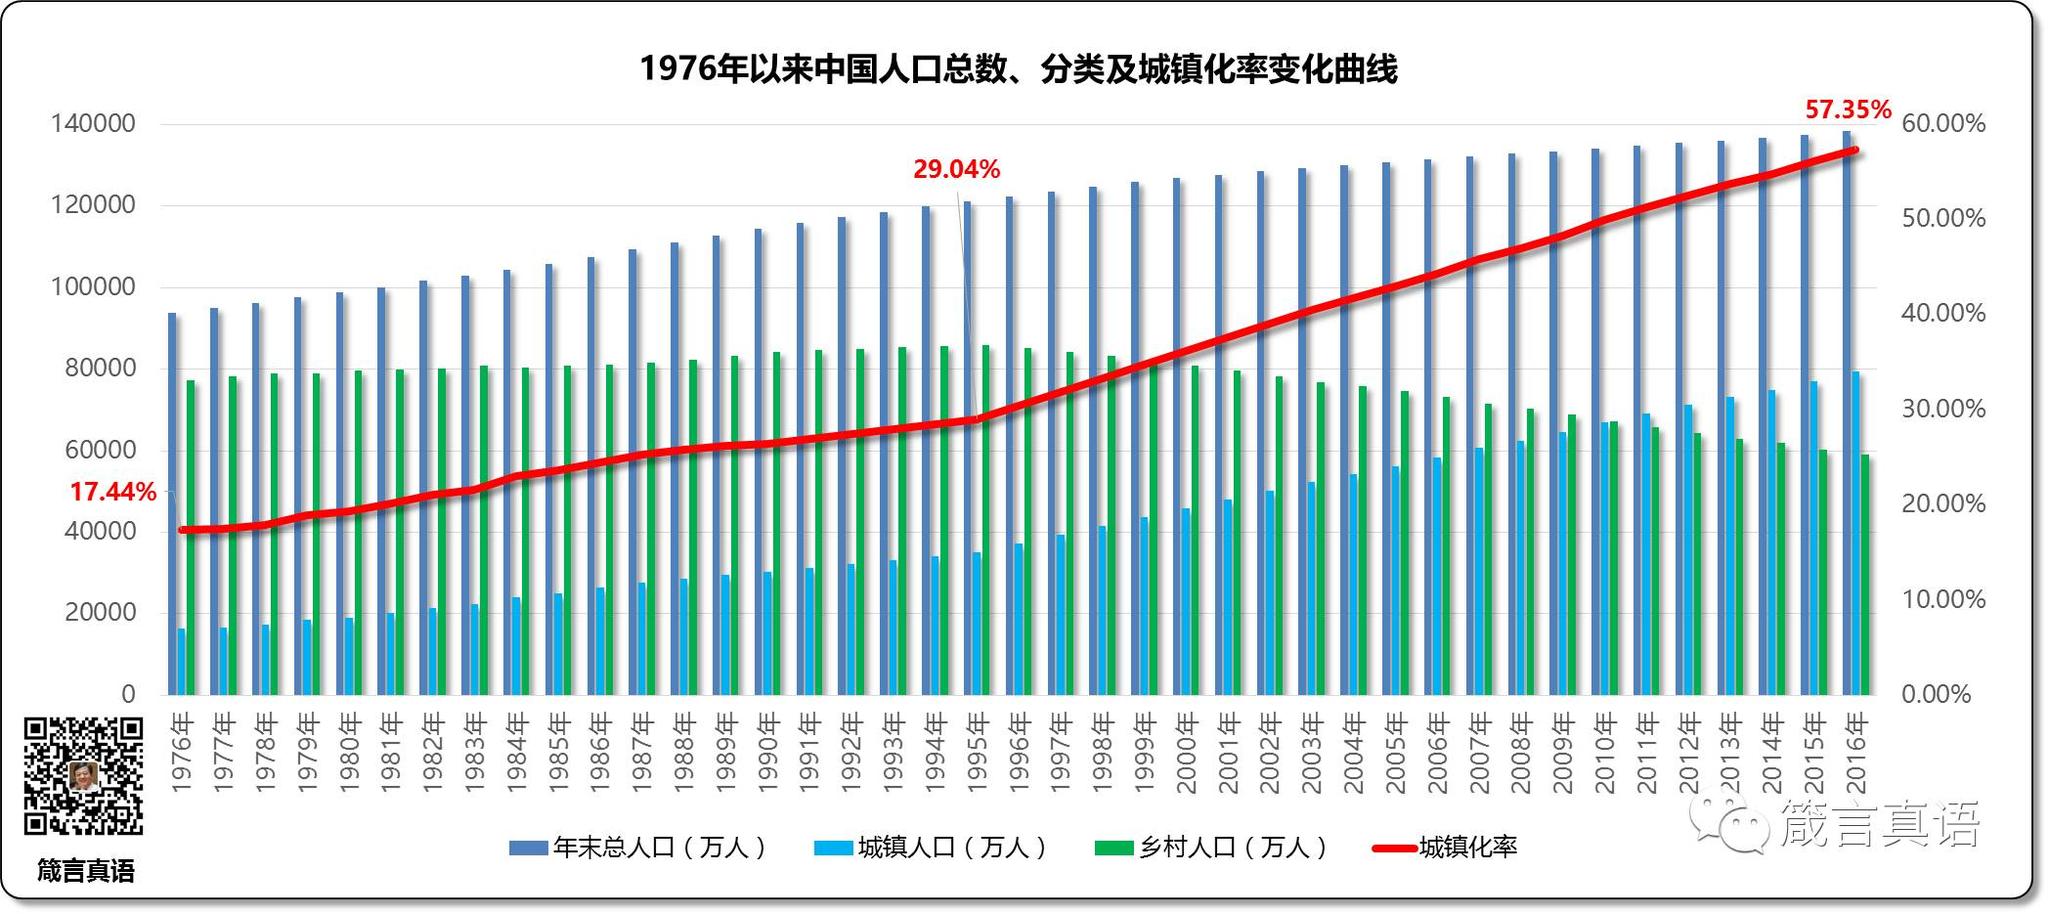 中国人口数量变化图_中国人口历年数量